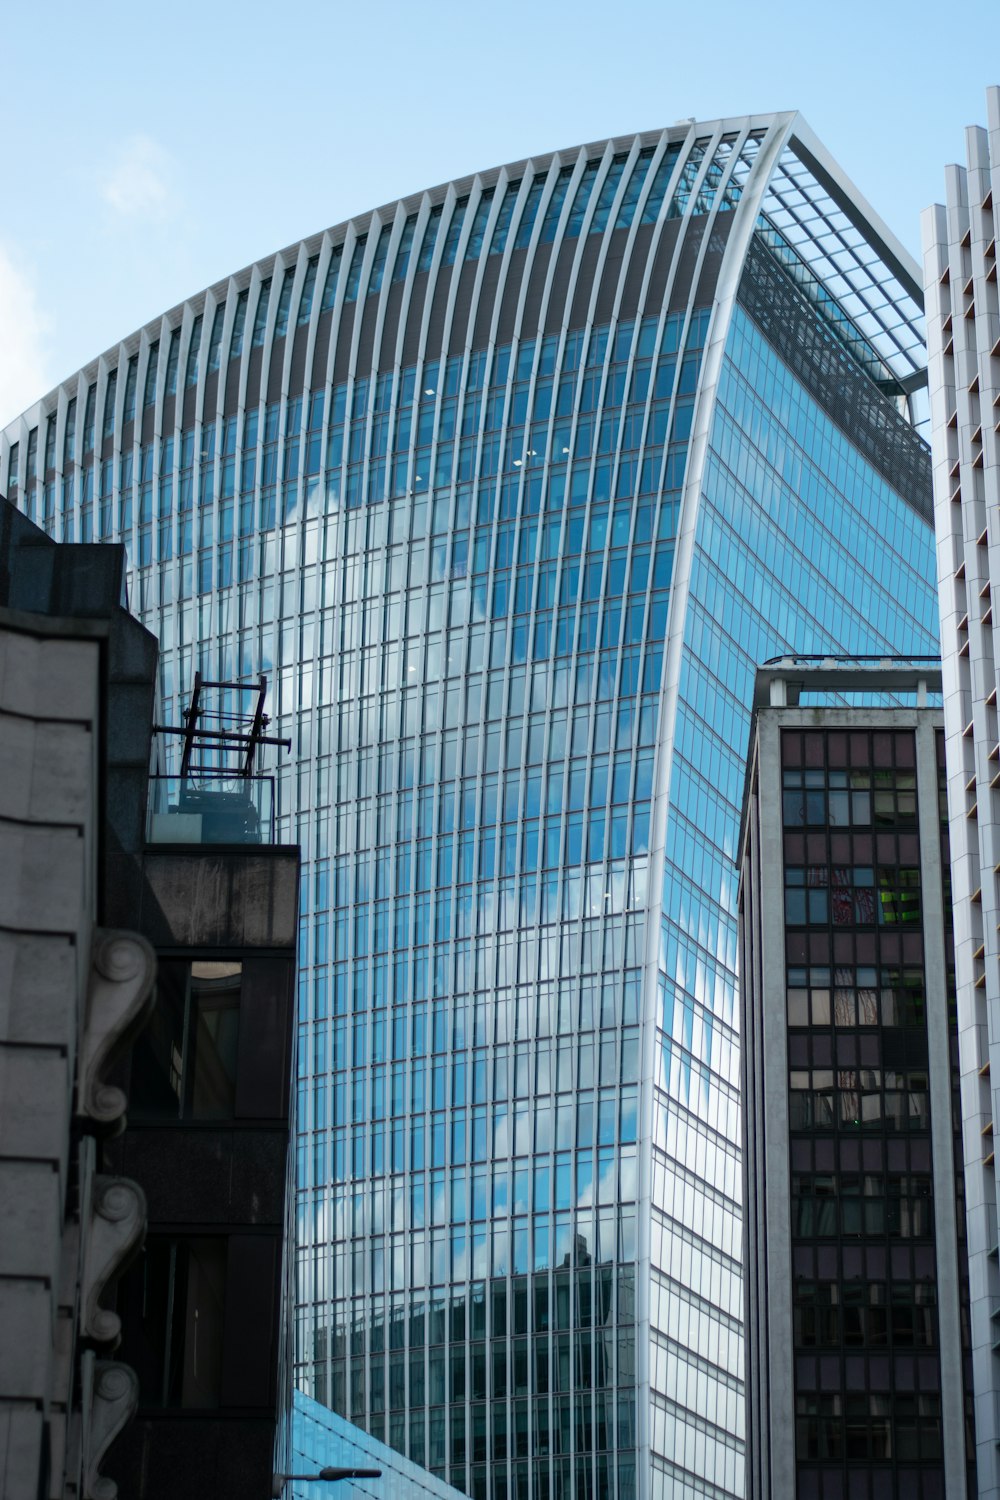 edifício de arranha-céus com paredes de vidro azul e branco